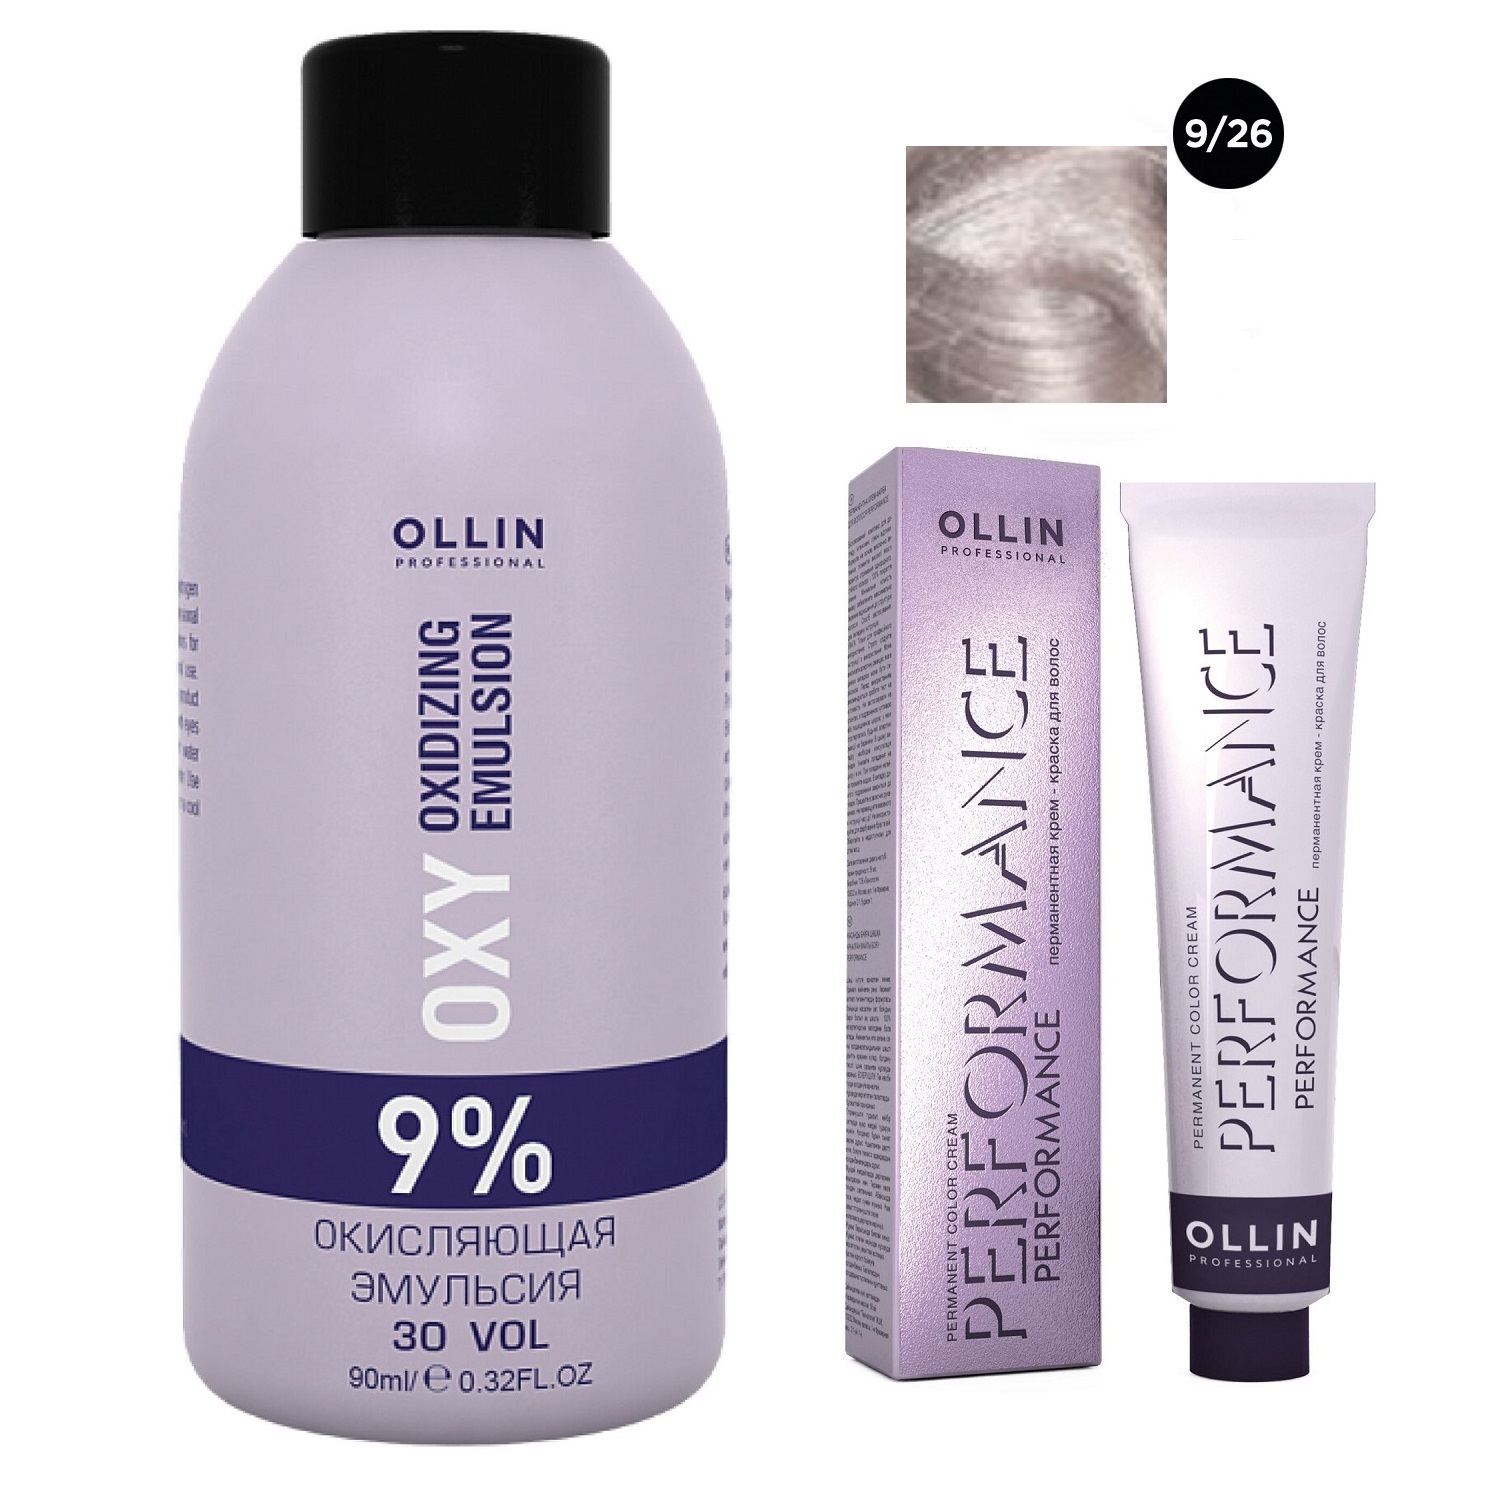 Ollin Professional Набор Перманентная крем-краска для волос Ollin Performance оттенок 9/26 блондин розовый 60 мл + Окисляющая эмульсия Oxy 9% 90 мл (Ollin Professional, Performance) окисляющая эмульсия oxy 9% 1000 мл